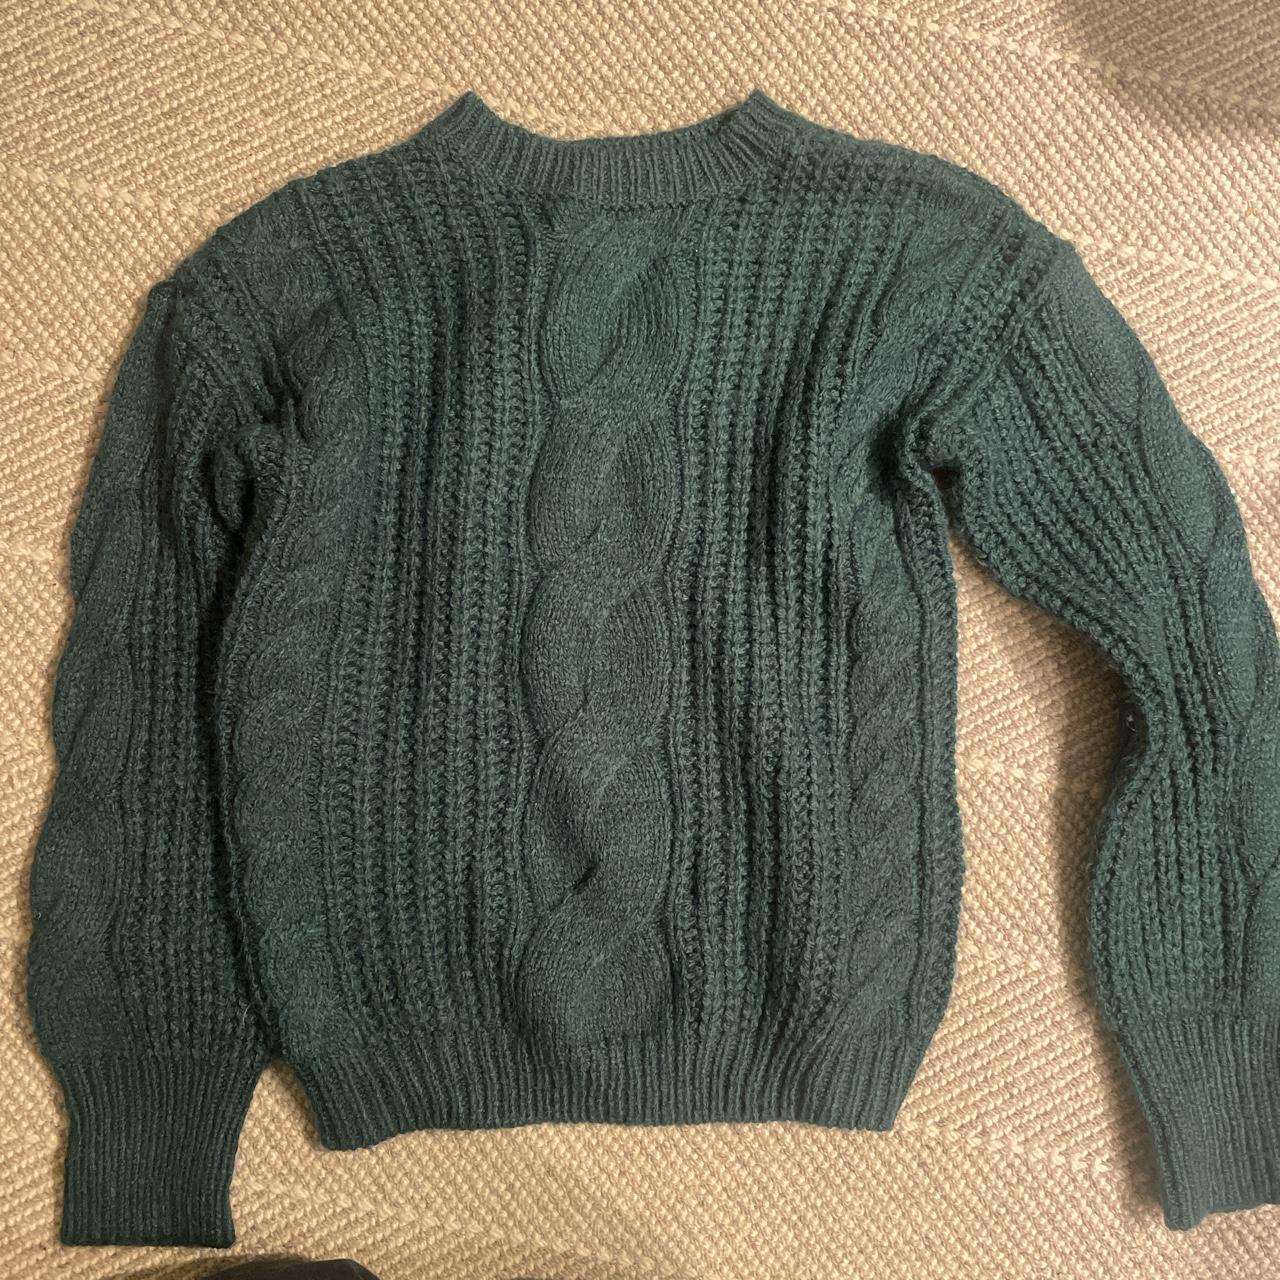 Knit green sweater - Depop